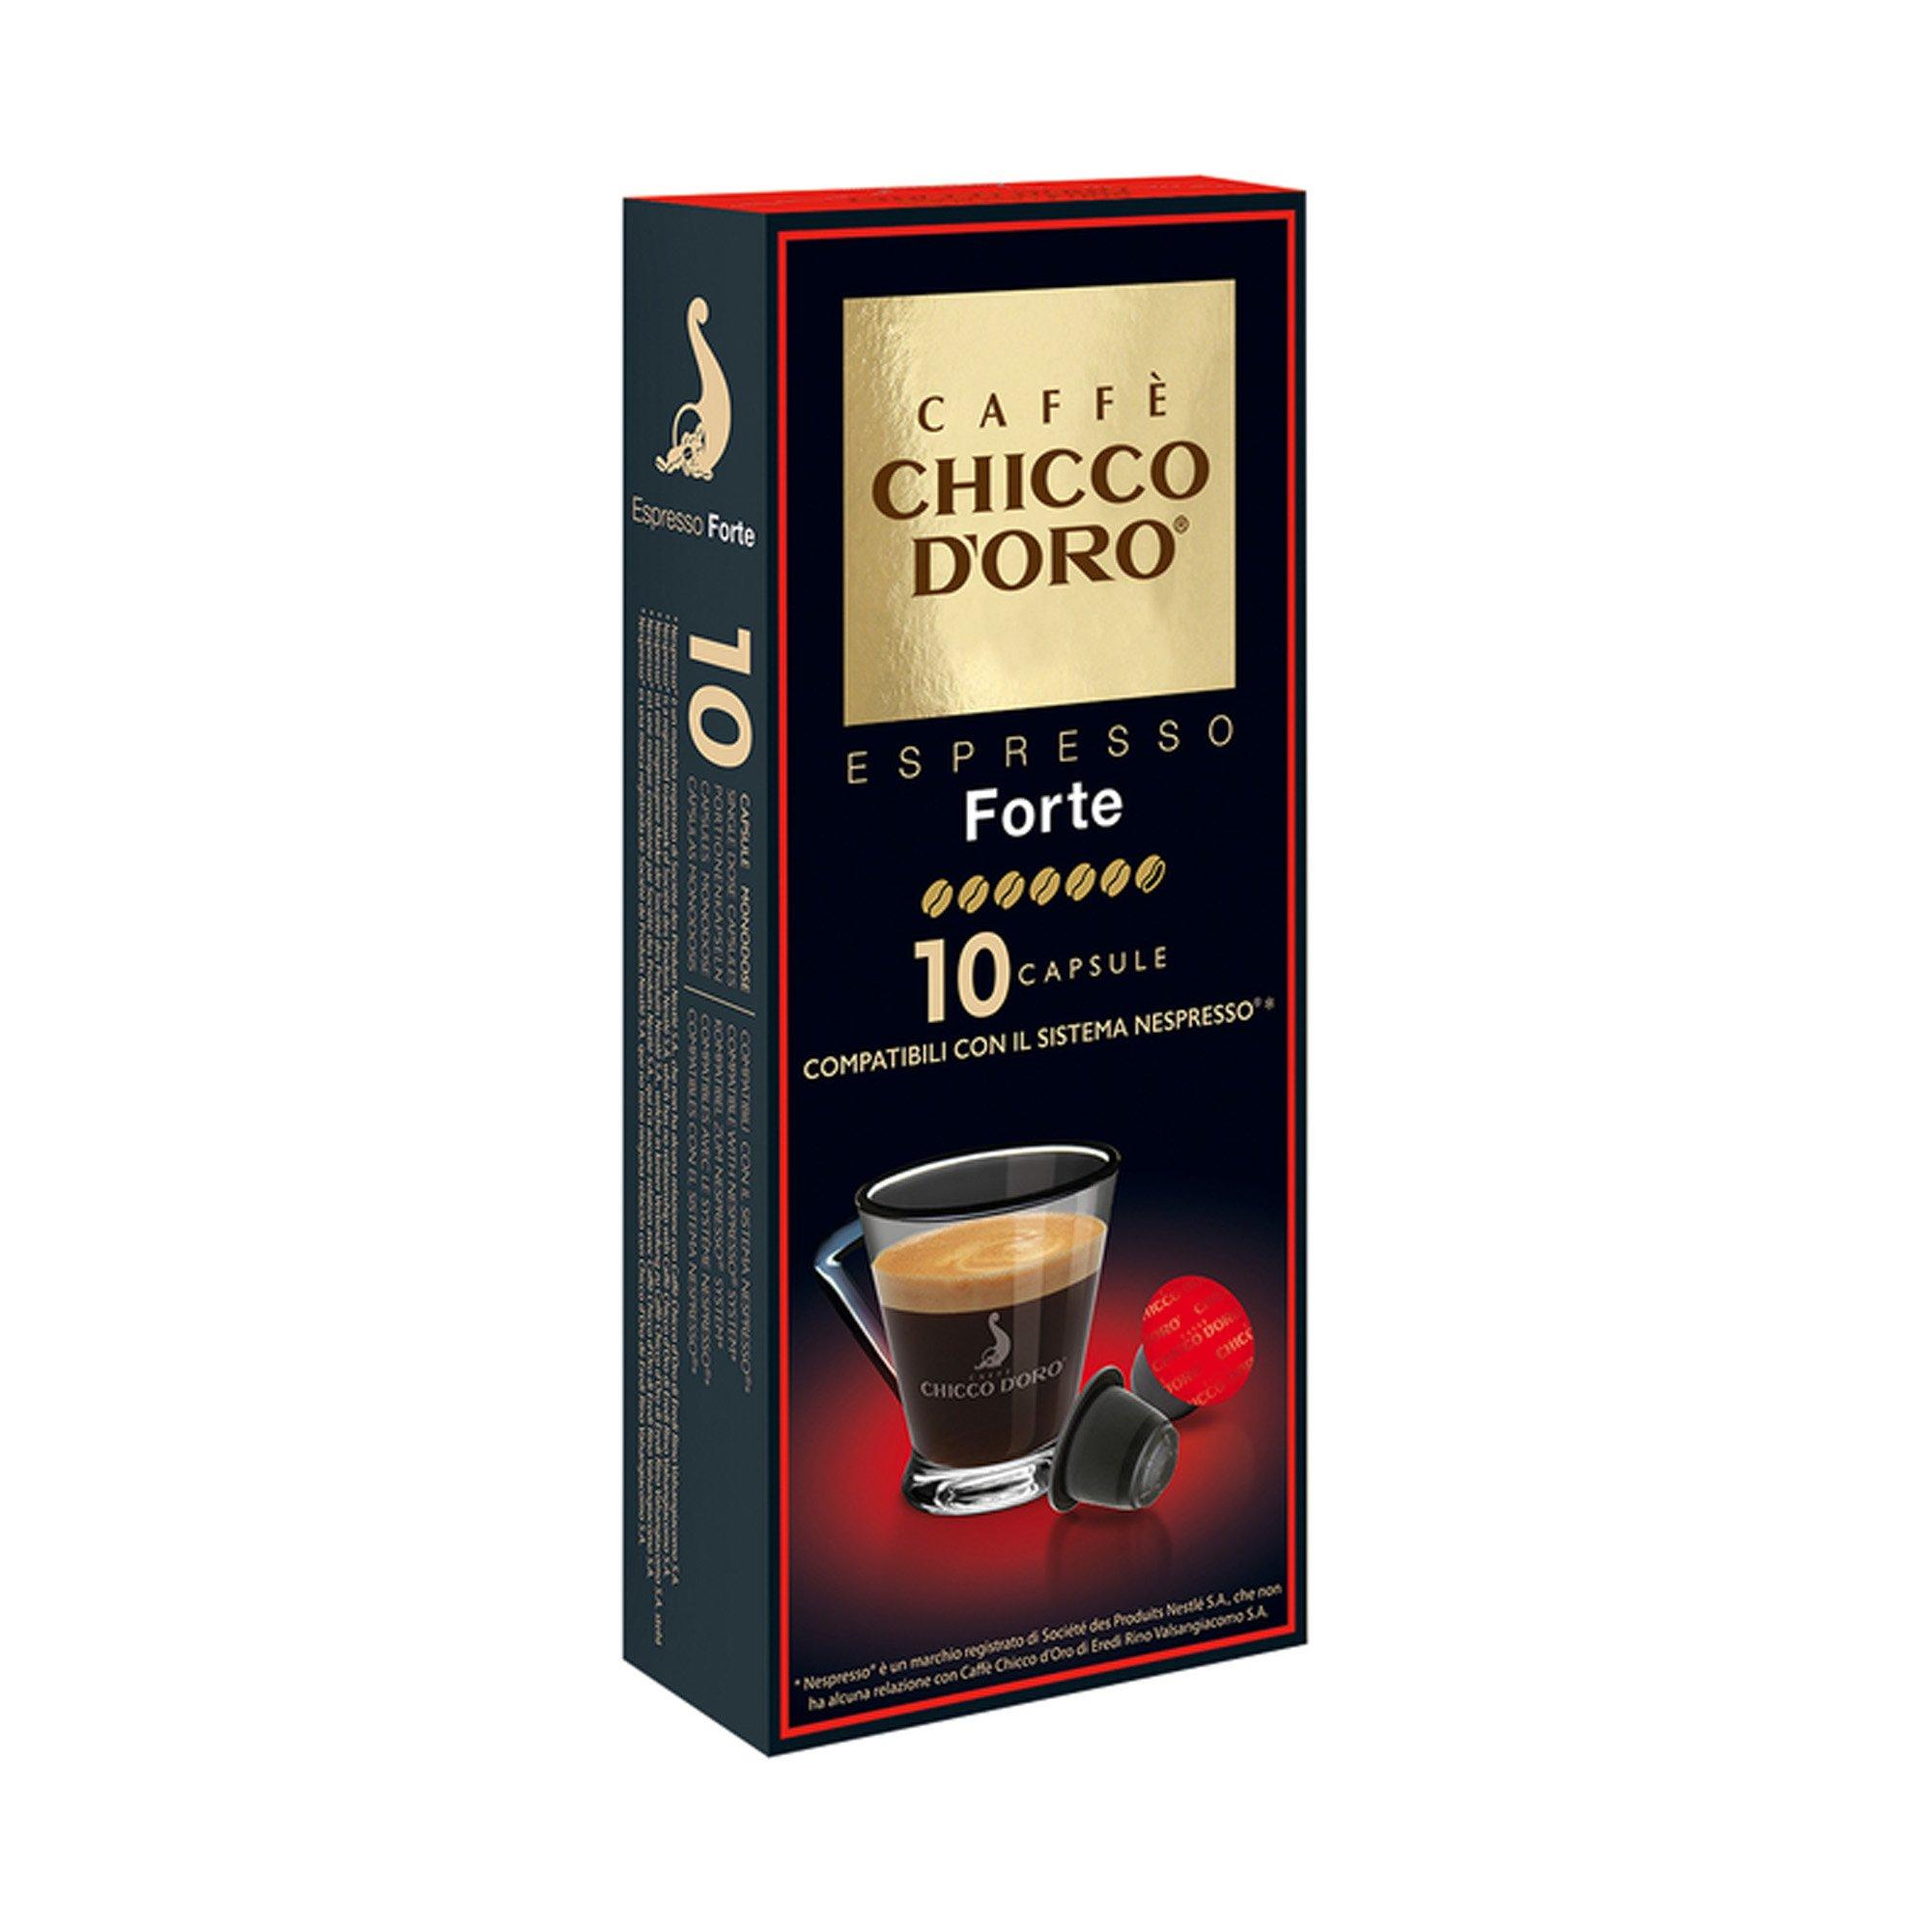 Image of CHICCO D'ORO Espresso Forte - 10 Capsule